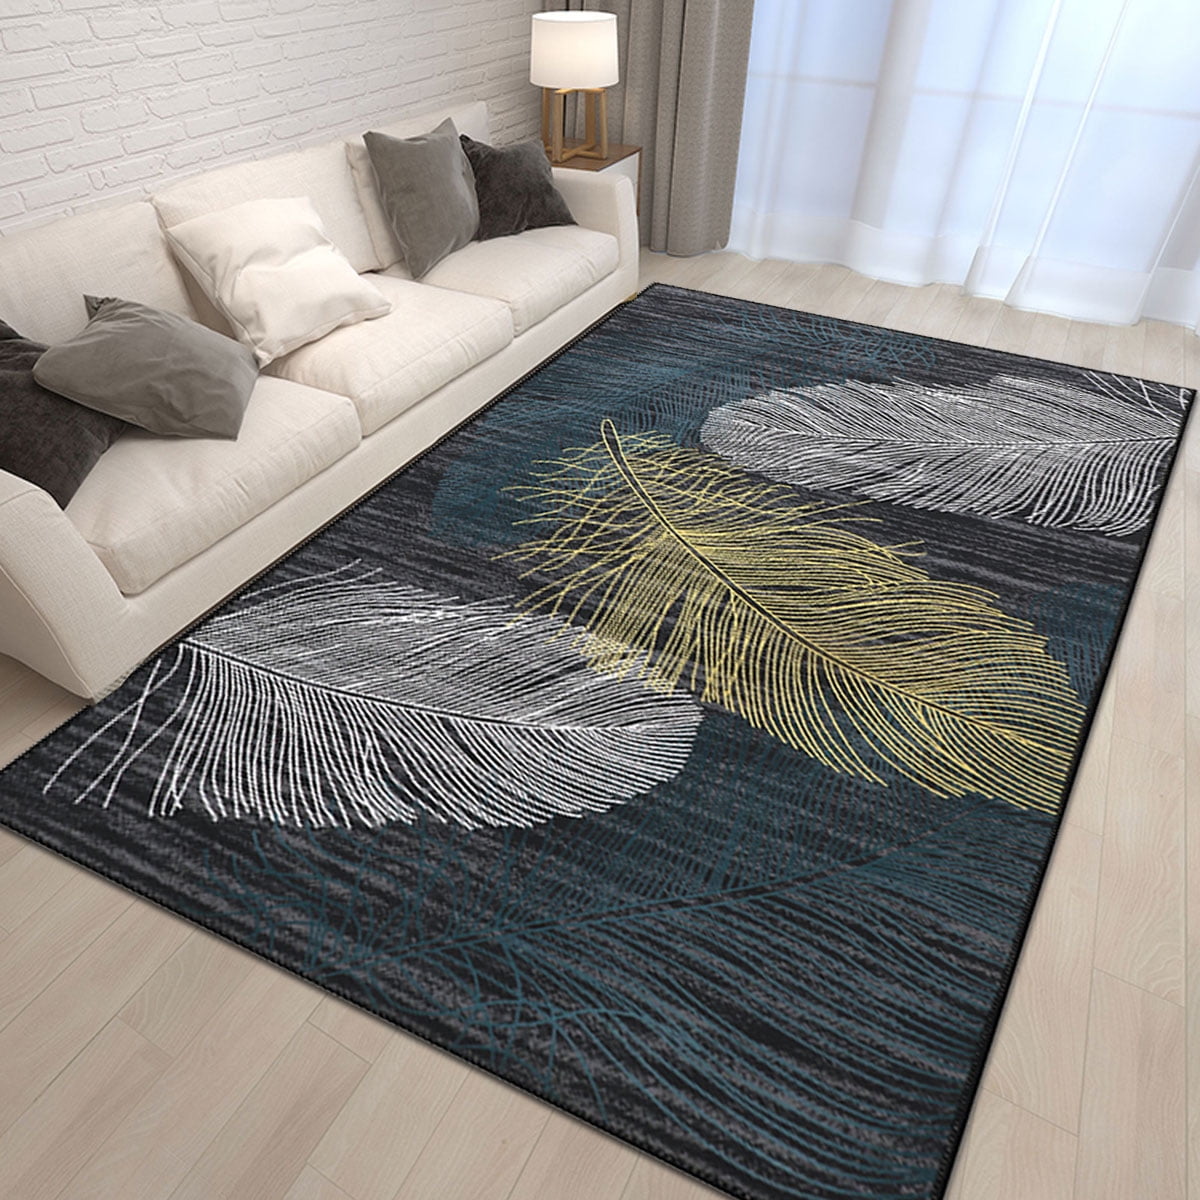 New Modern Large Rugs Living Room Carpets Floor Mat Rug Runner Bedroom Carpet 